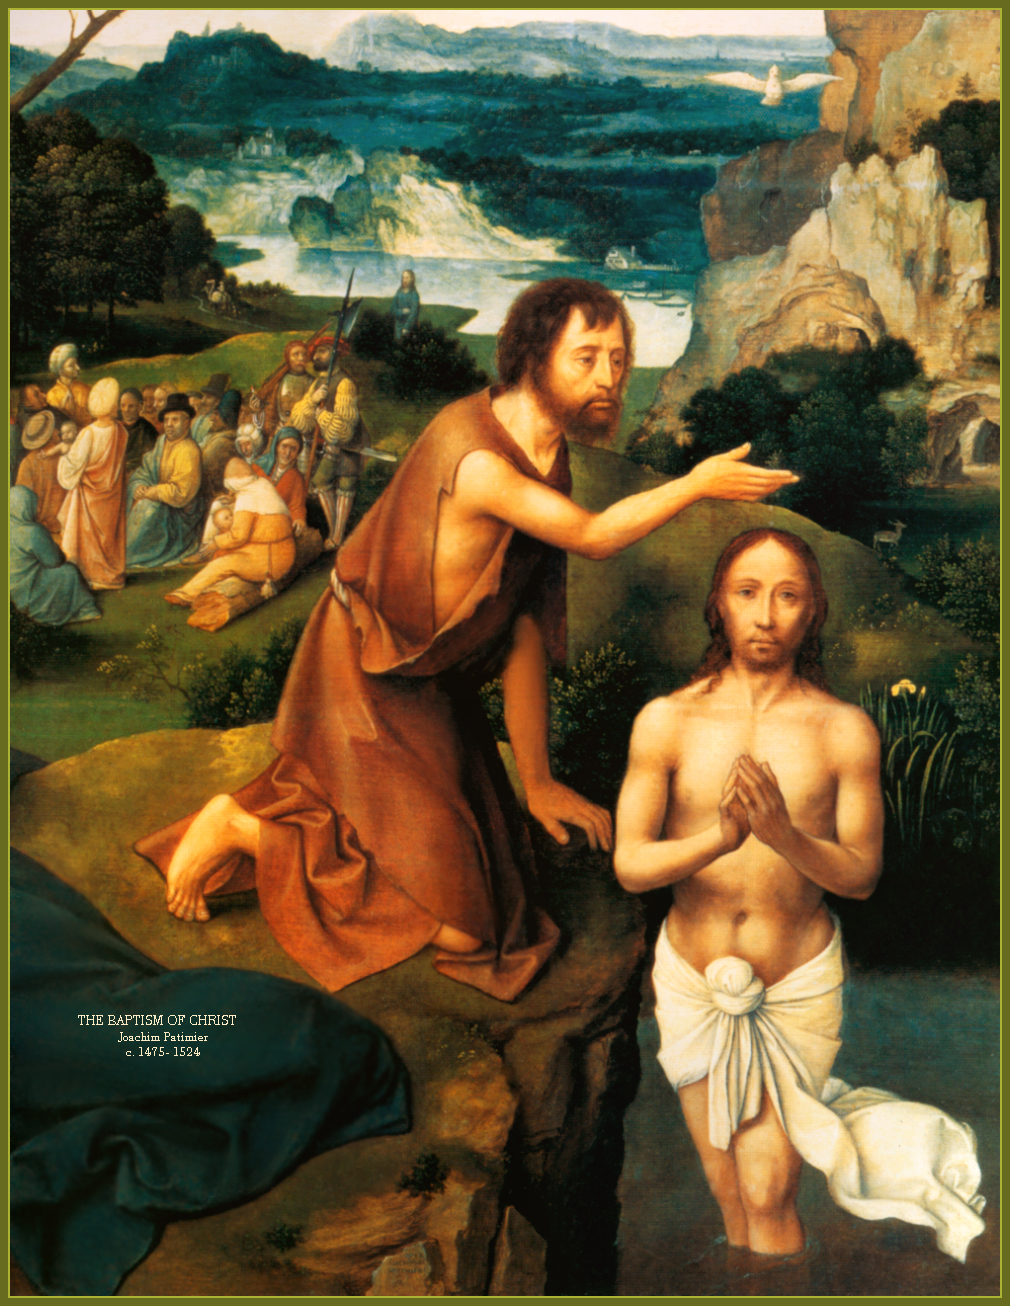 The Baptism of Christ dans images sacrée john-baptist2a